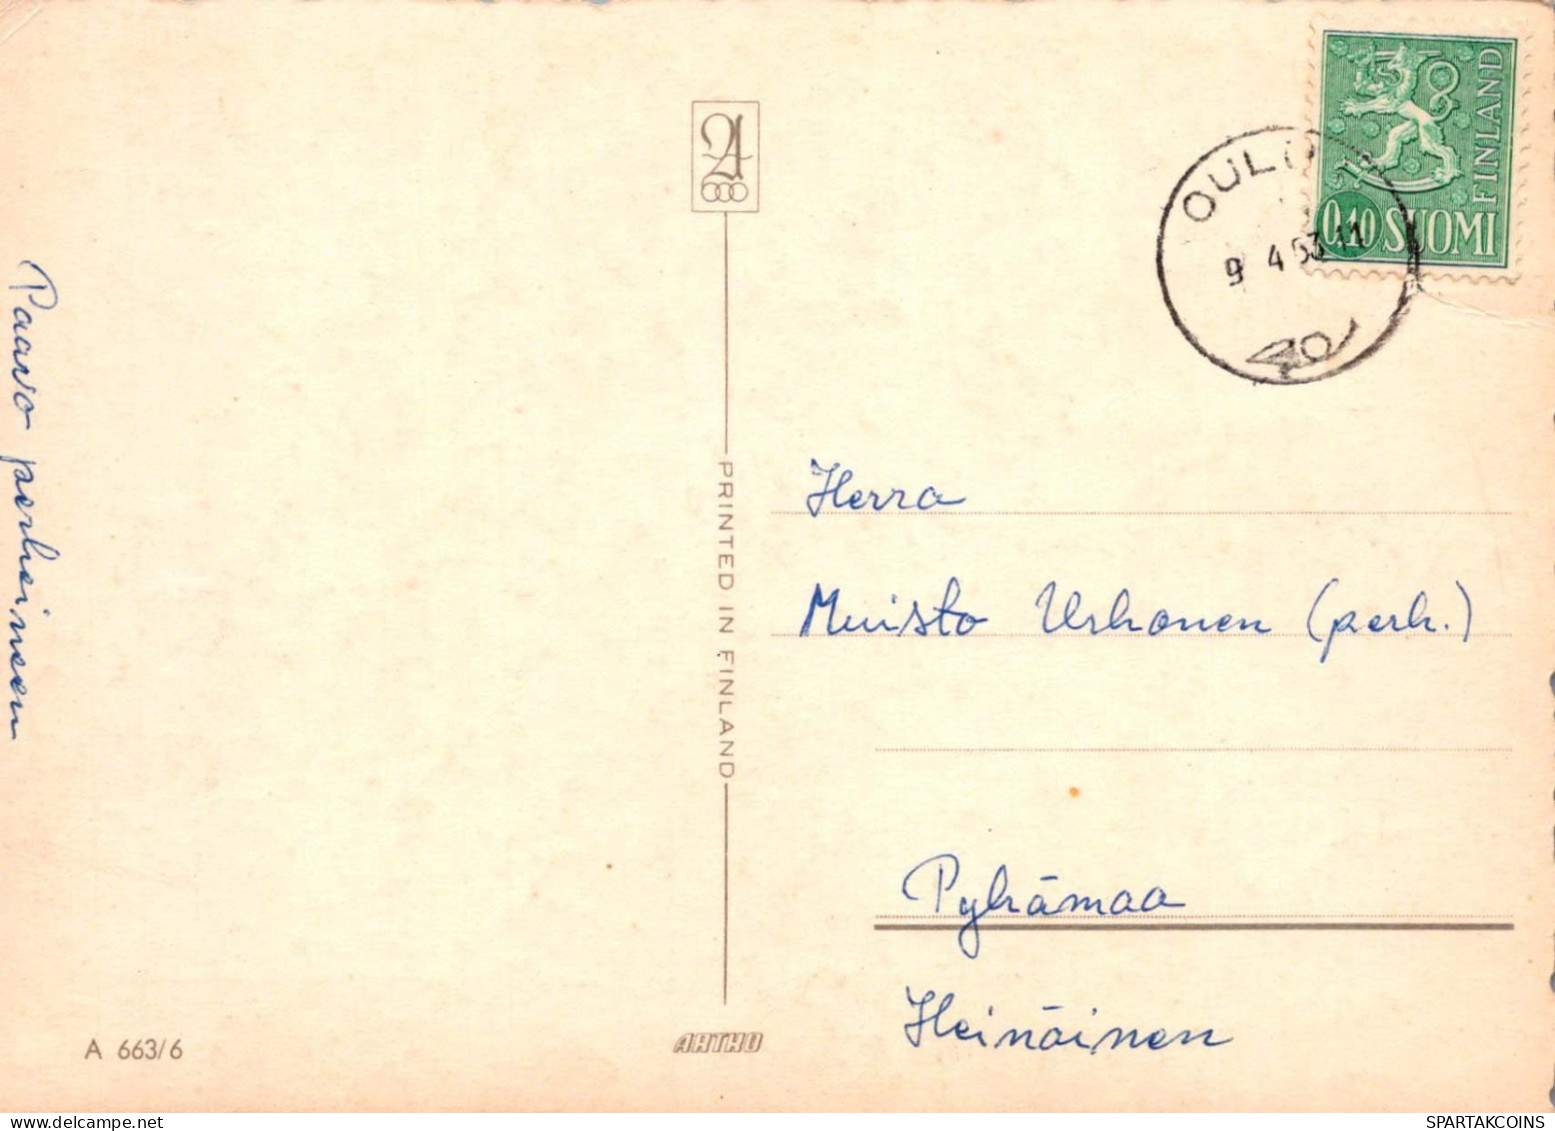 OSTERN HUHN EI Vintage Ansichtskarte Postkarte CPSM #PBO601.DE - Easter